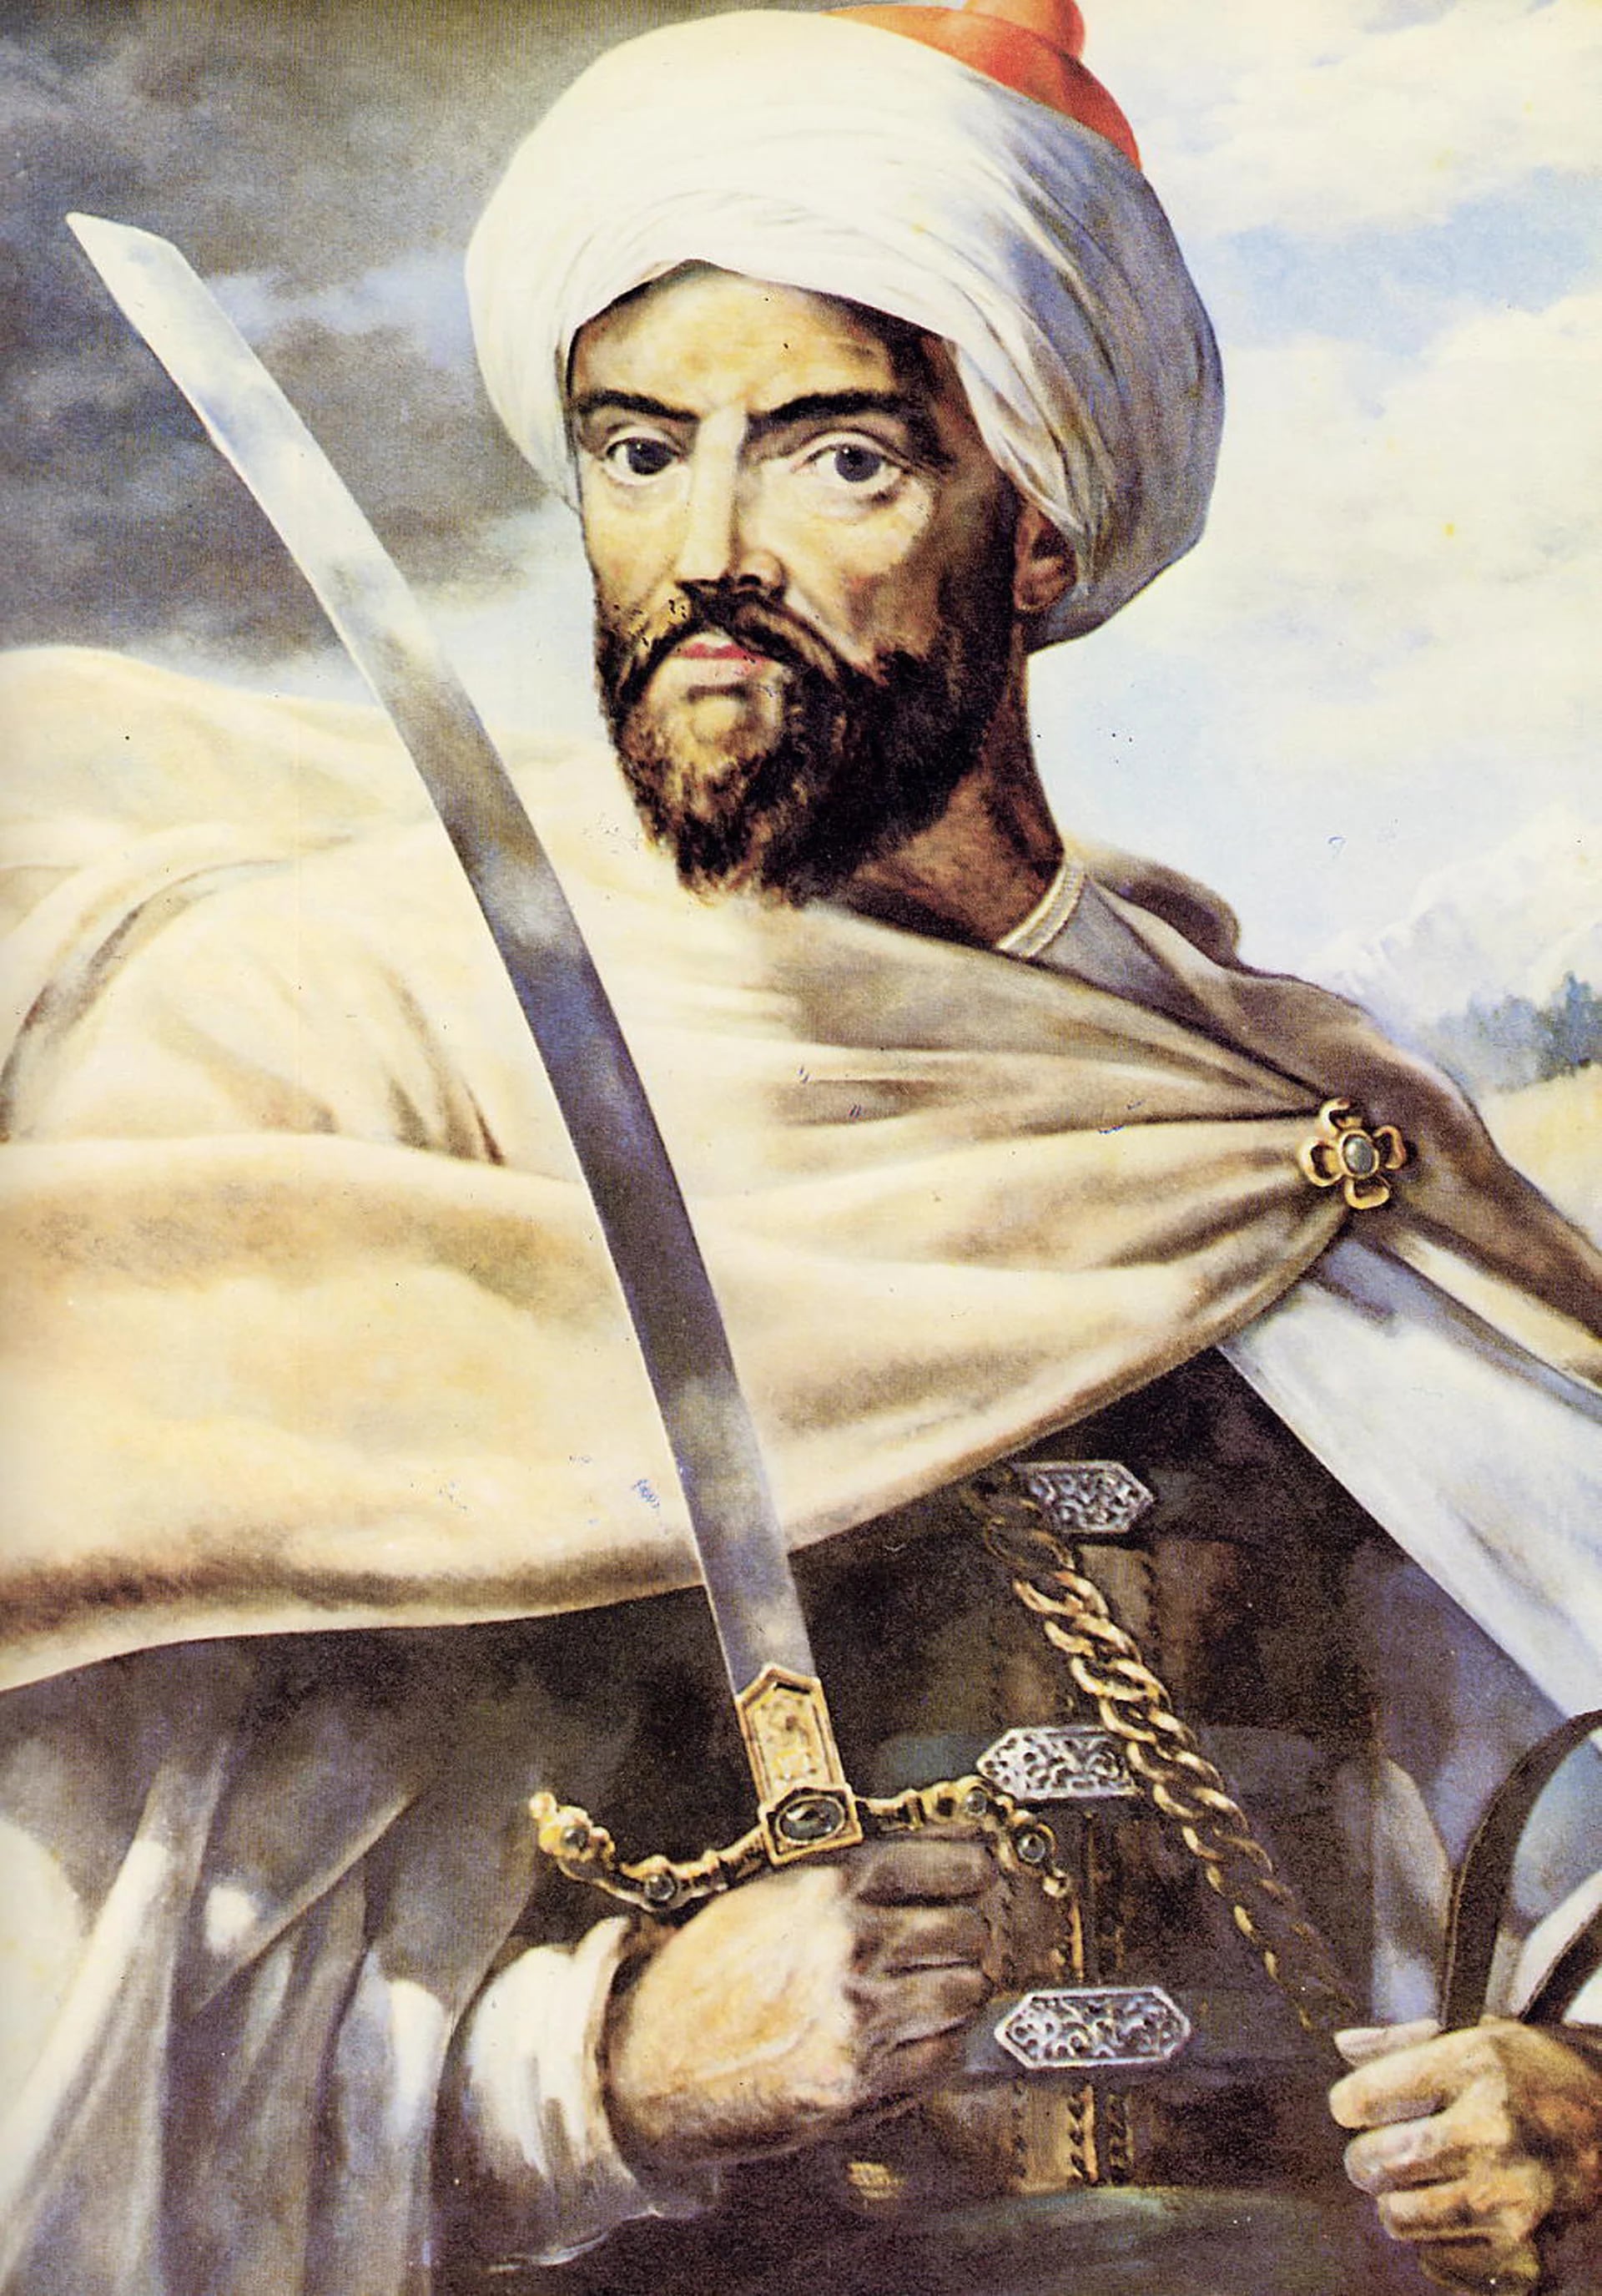 Se cree que el sultán marroquí tuvo más de 1000 hijos